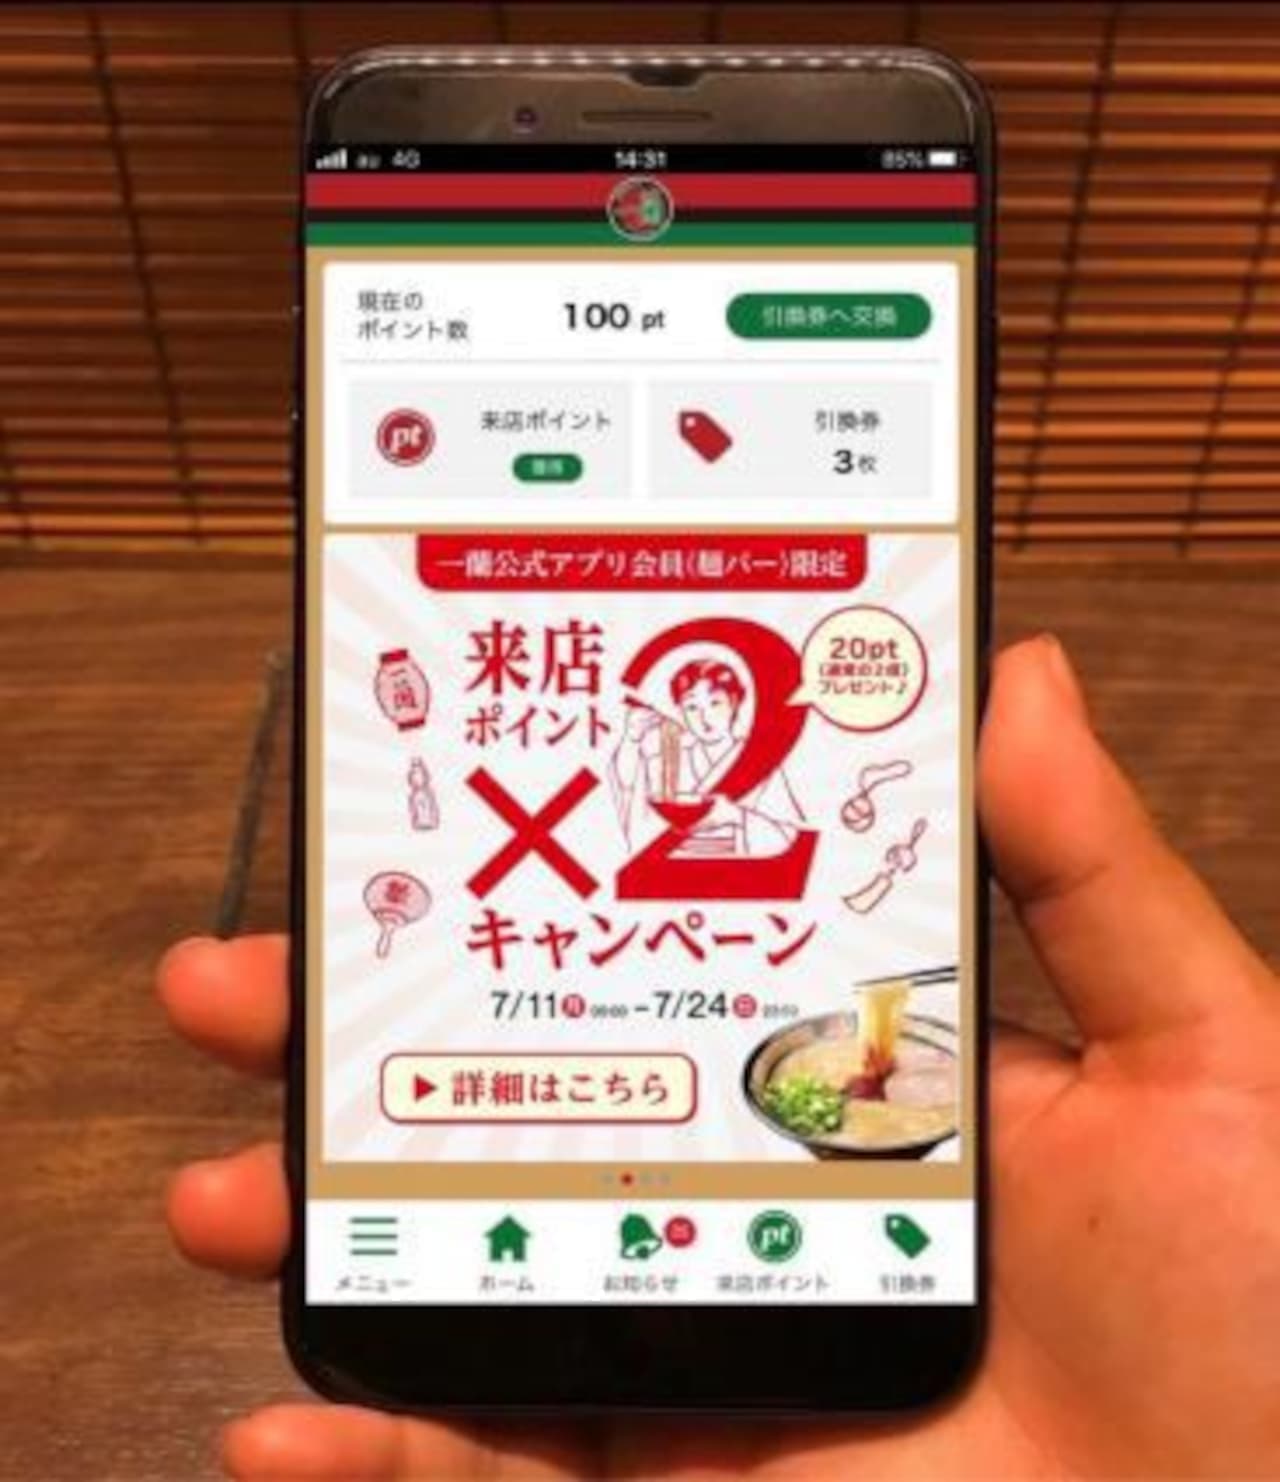 一蘭「一蘭公式アプリ 来店ポイント2倍」キャンペーン